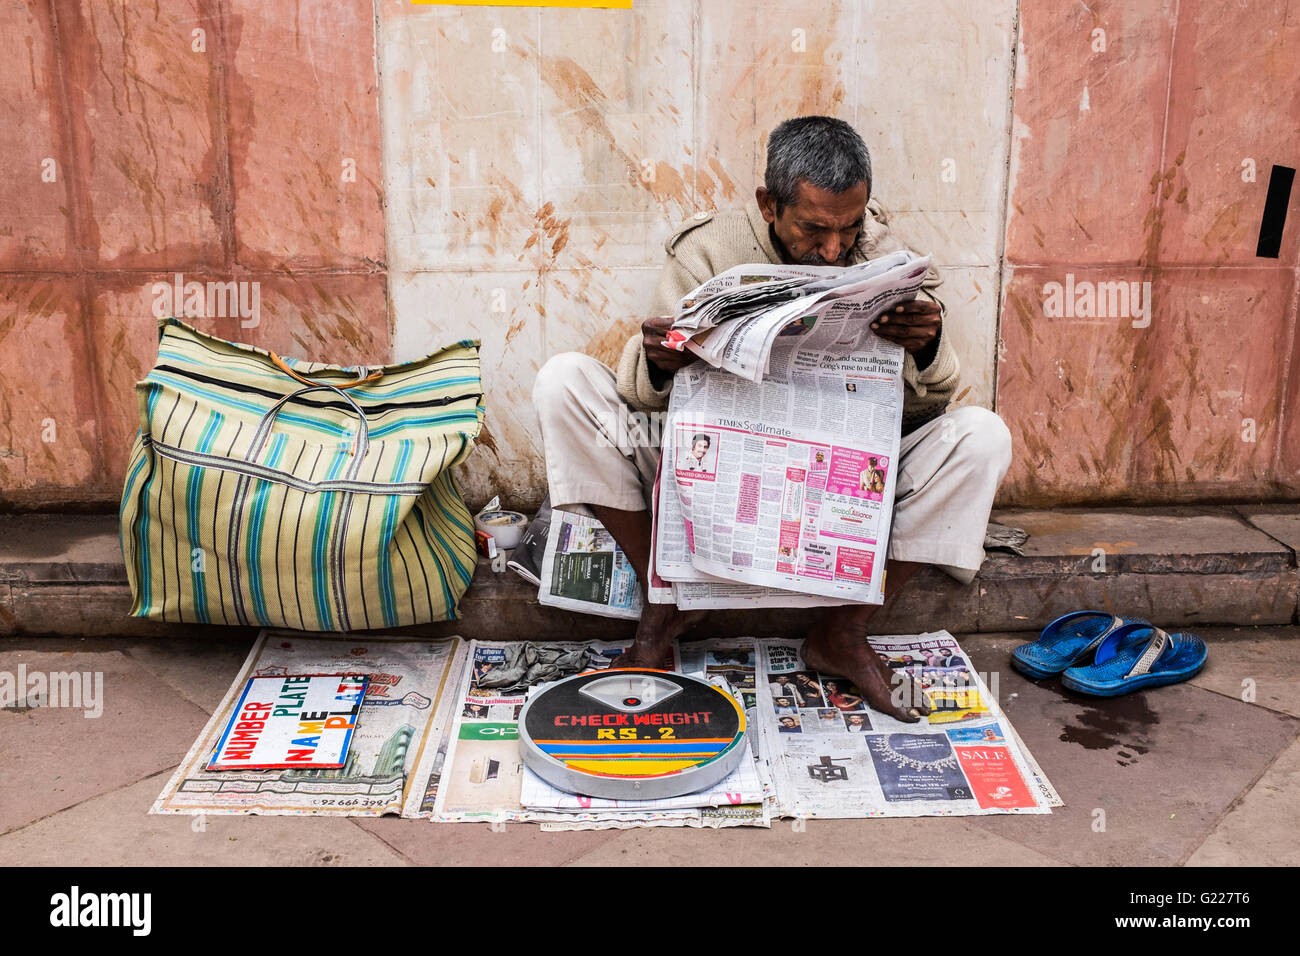 La lecture de l'homme tout en papier qu'il attend d'être clients de se peser, Delhi, Inde Banque D'Images